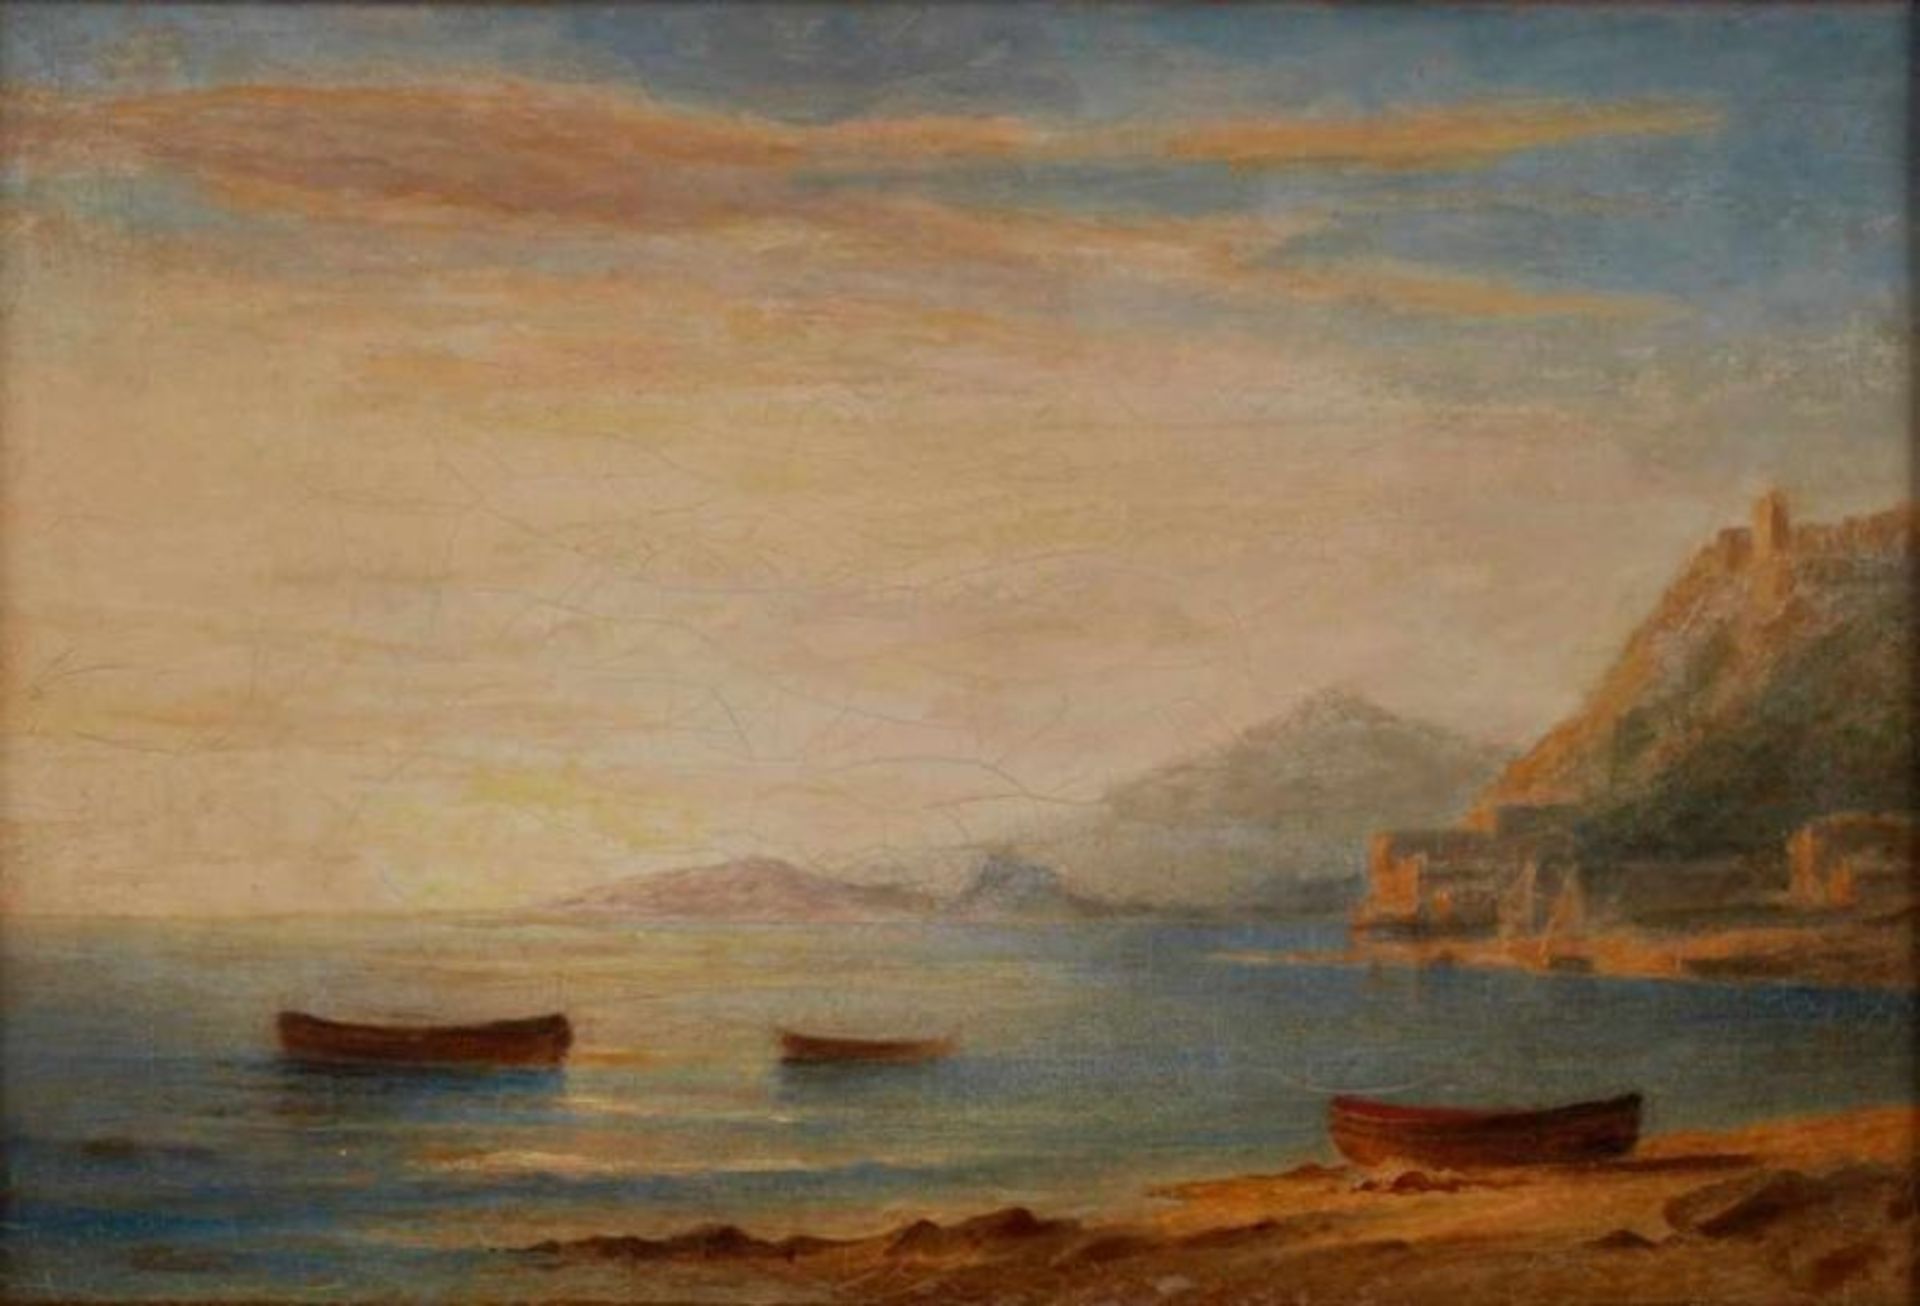 Gemälde/Ölstudie Carl Morgenstern 1811 Frannkfurt - 1893 Frankfurt "Italienische Küstenszene" - Bild 3 aus 6